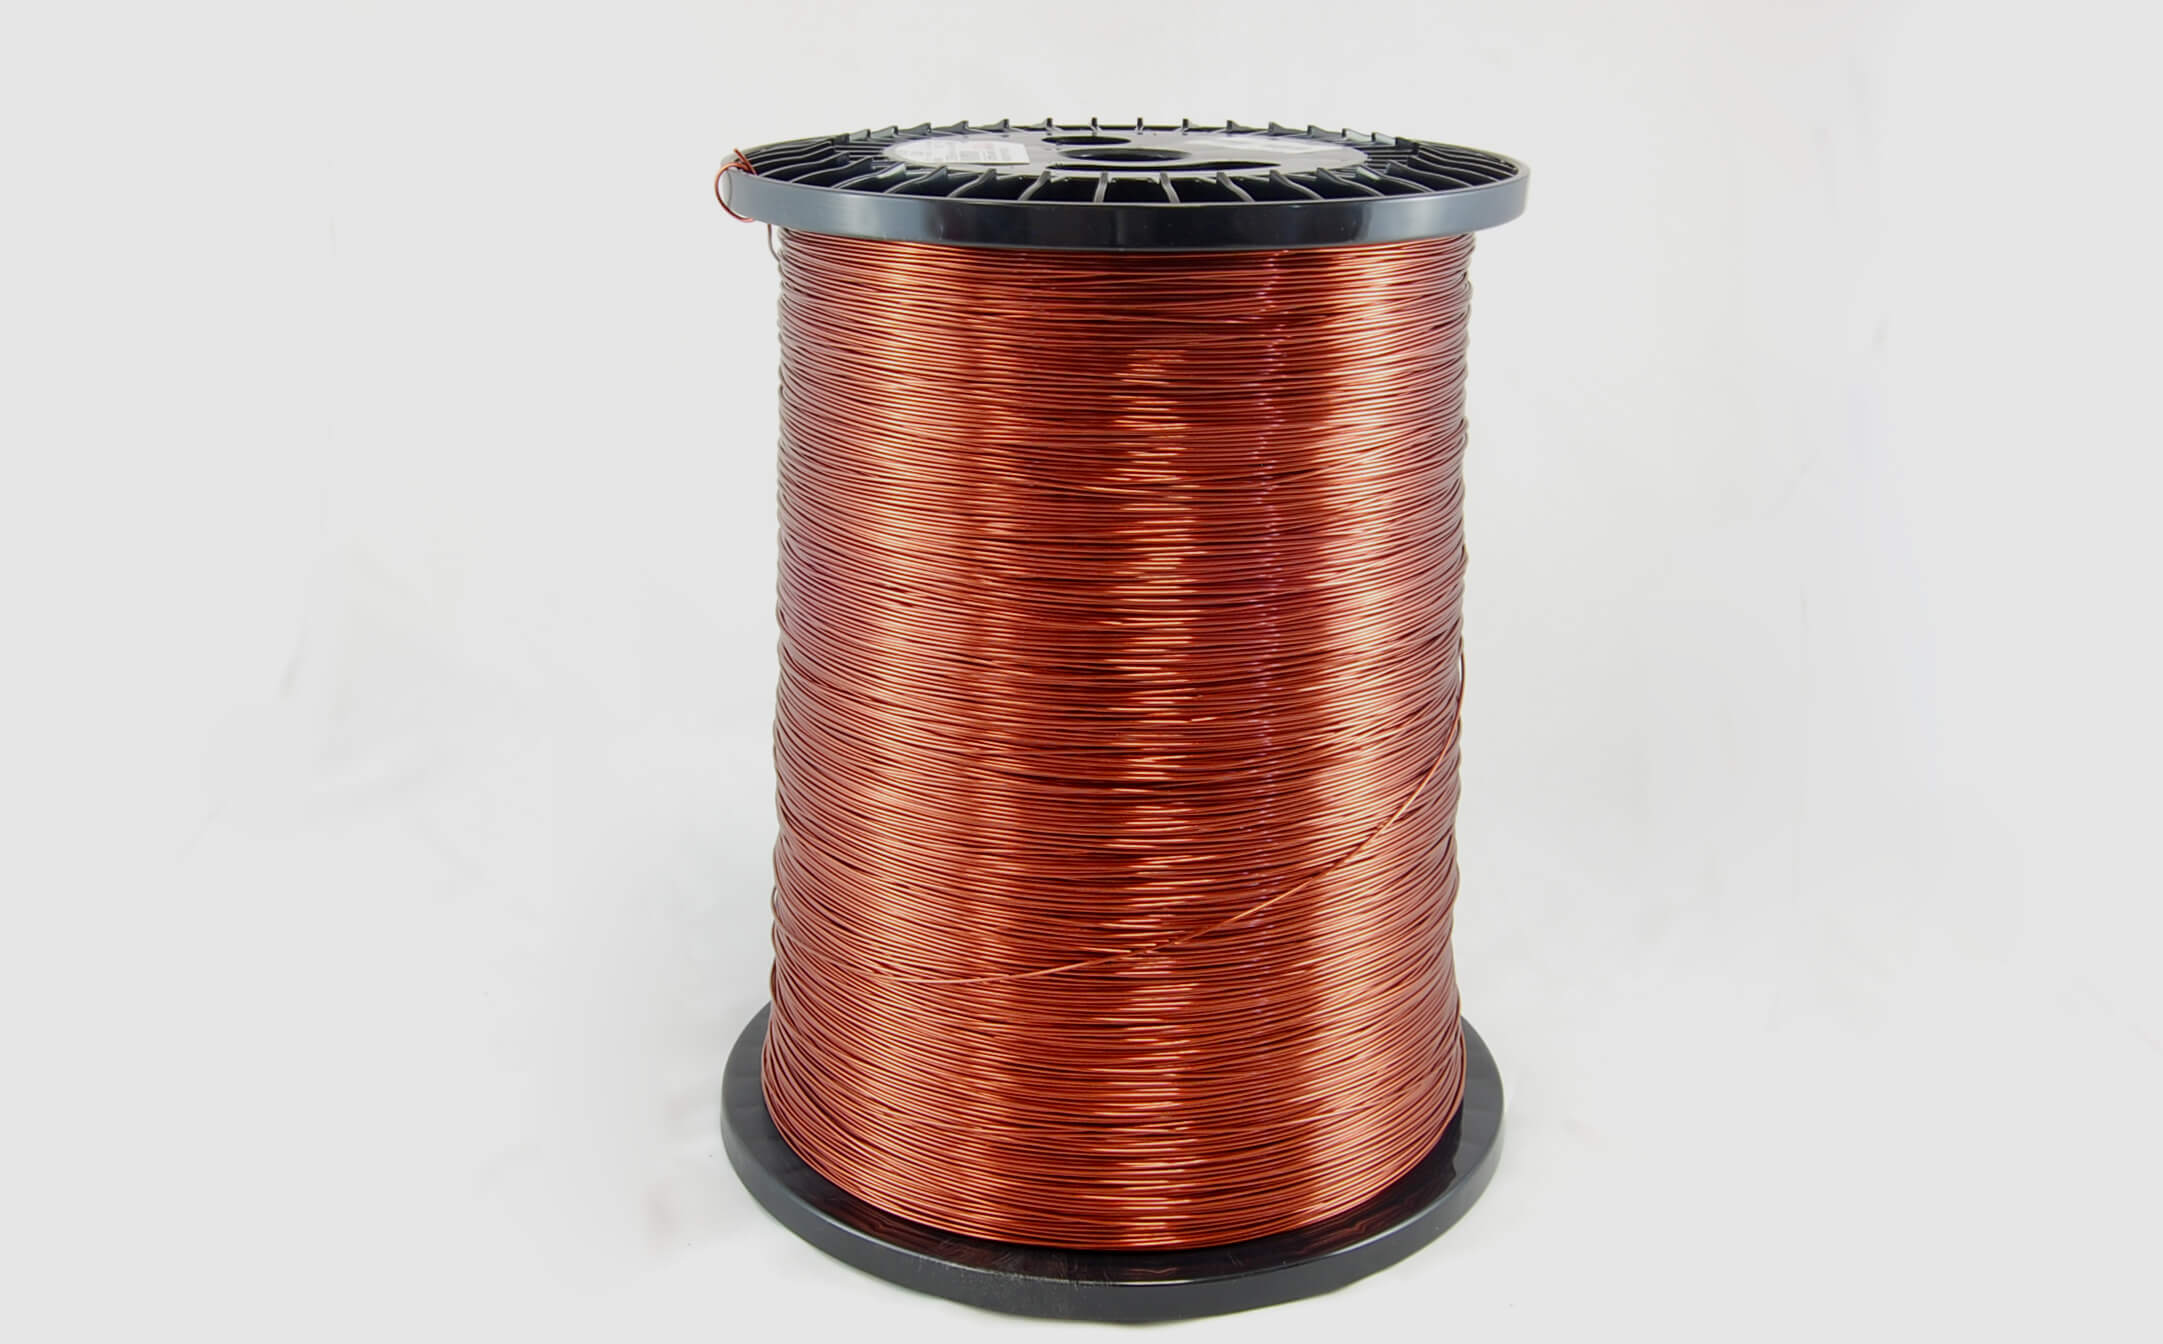 #19 Heavy Super Hyslik 200 Round HTAIH MW 35 Copper Magnet Wire 200°C, copper, 85 LB pail (average wght.)